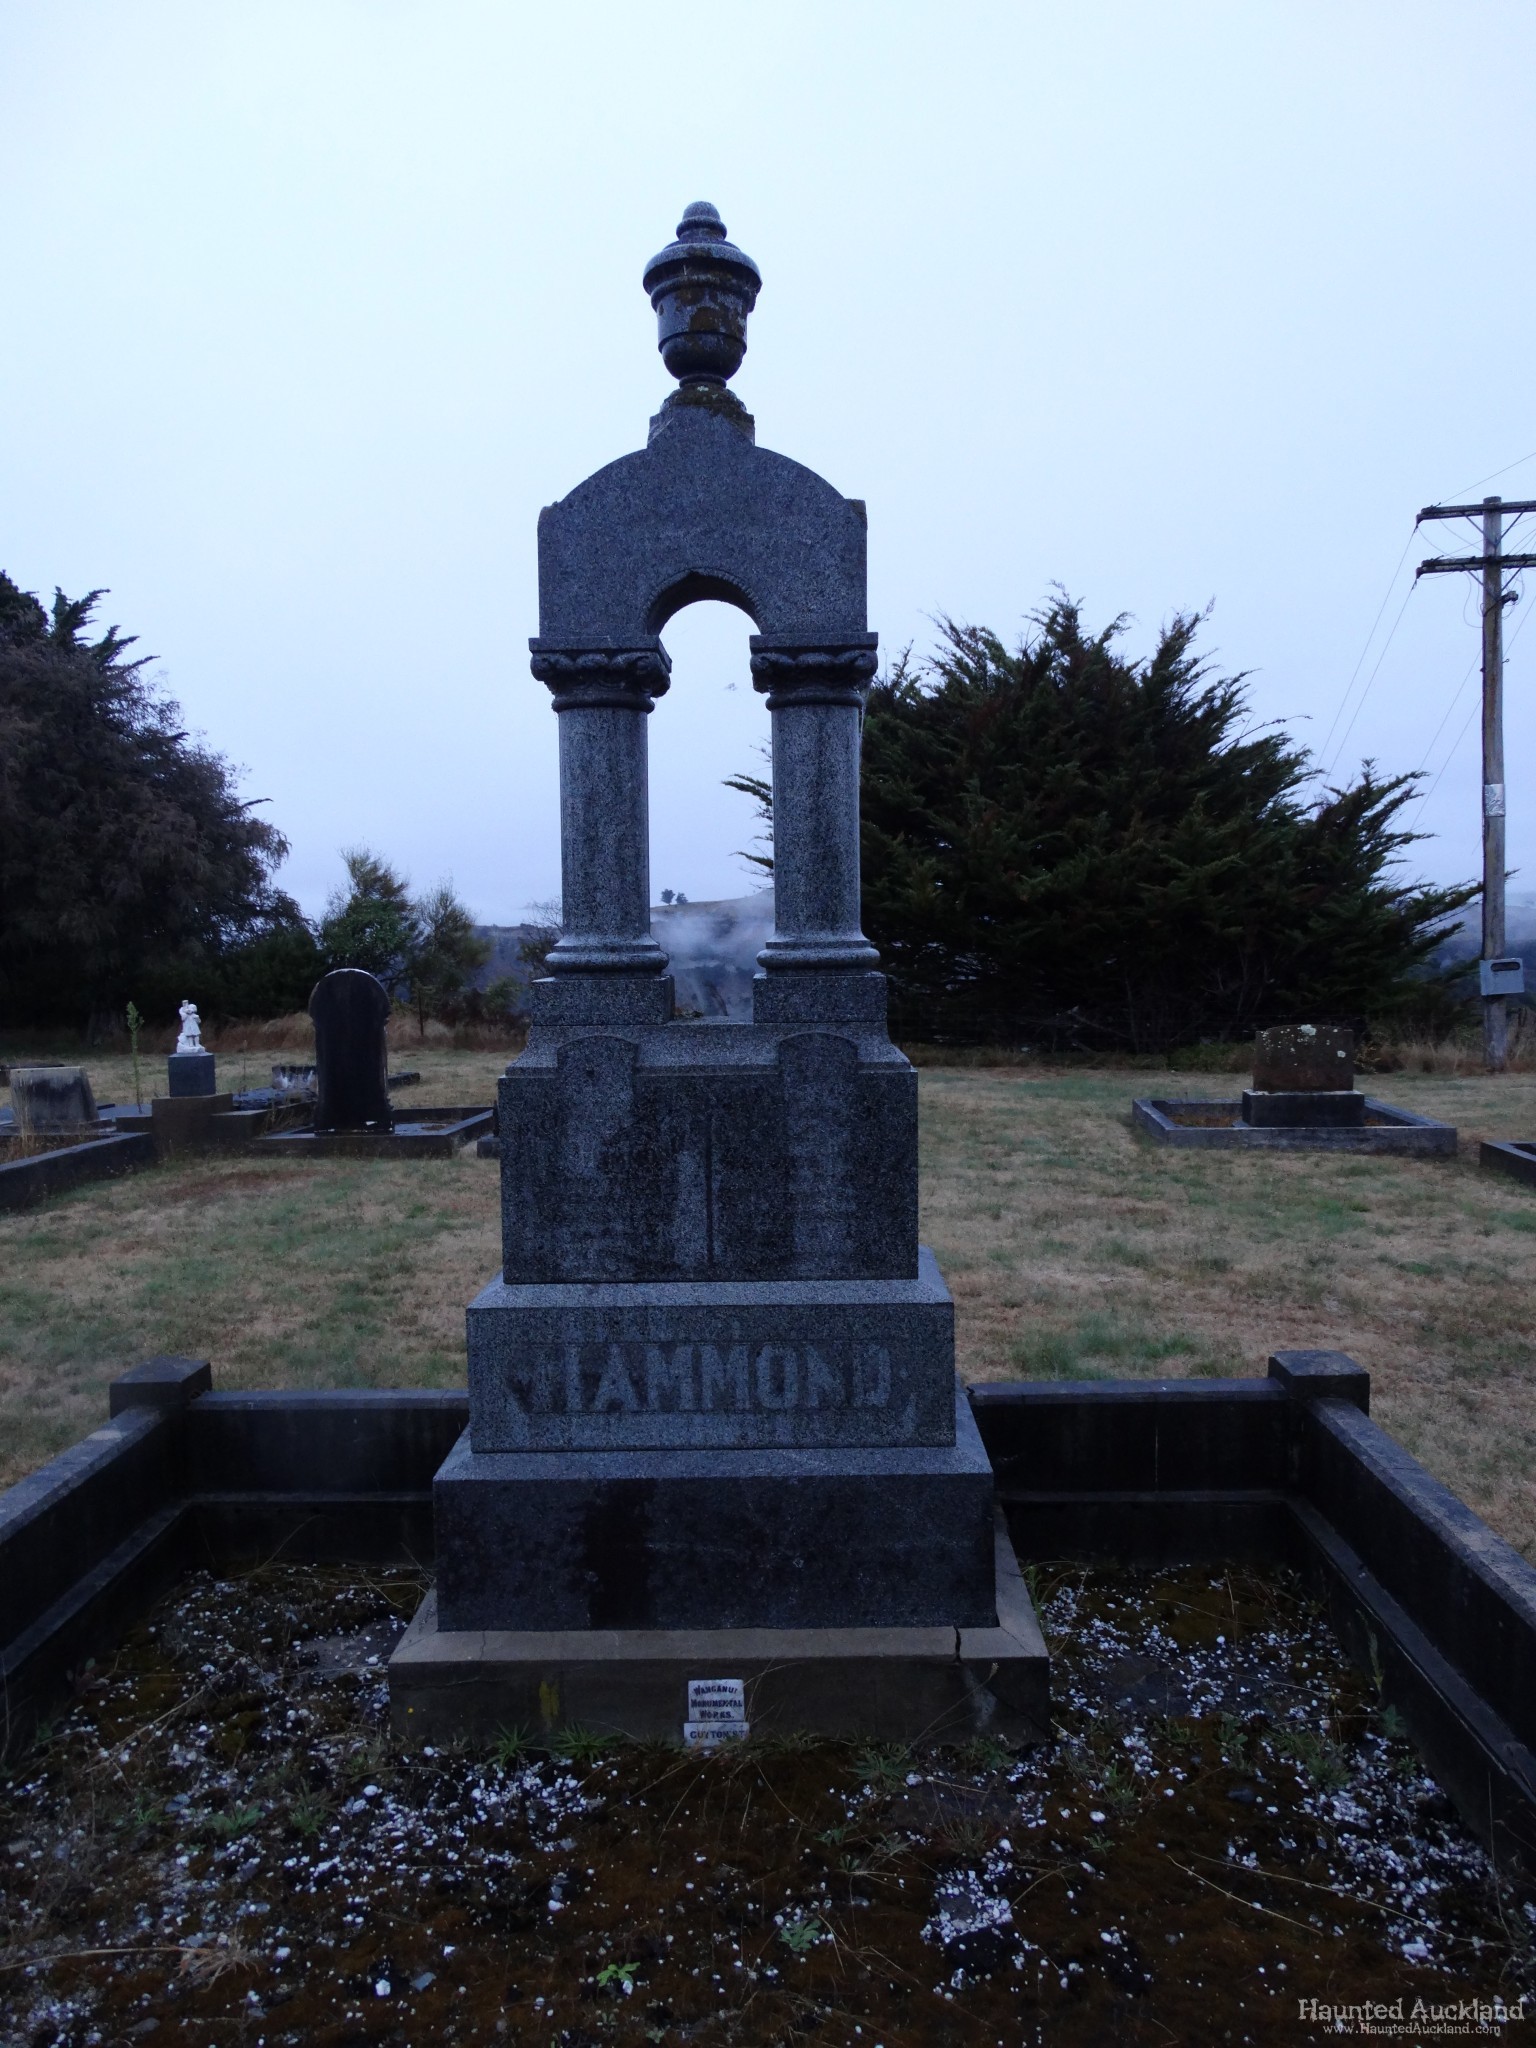 Ohingaiti Cemetery – Manawatu